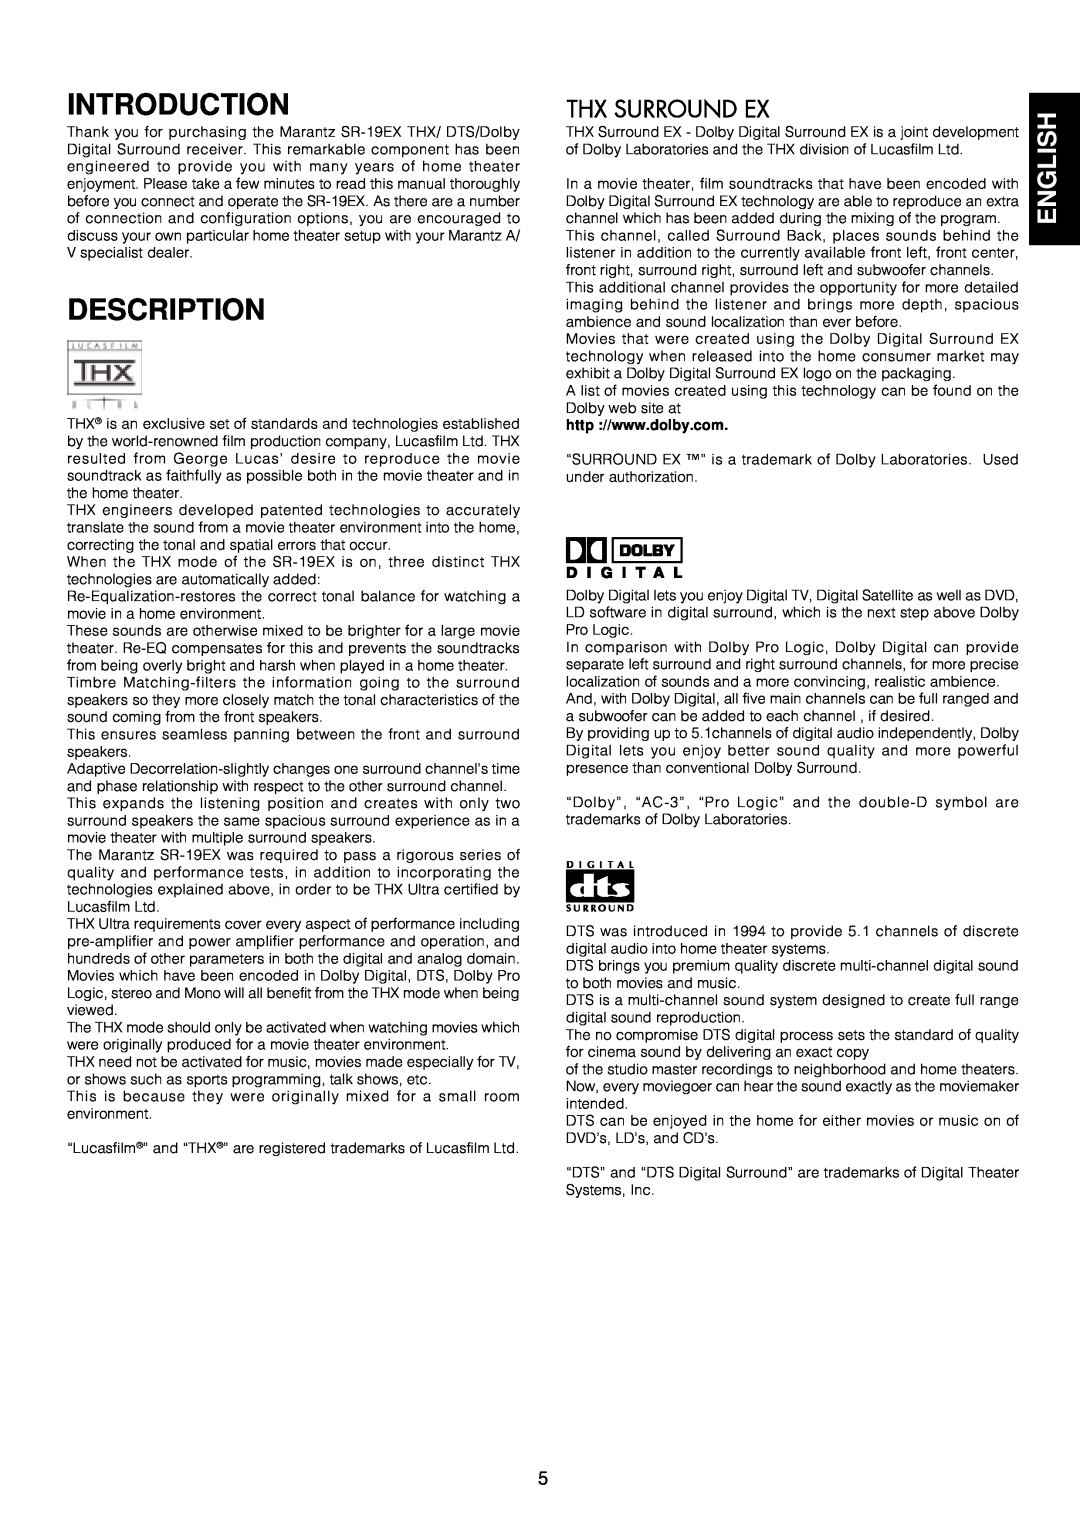 Marantz SR-18EX manual Introduction, Description, English 